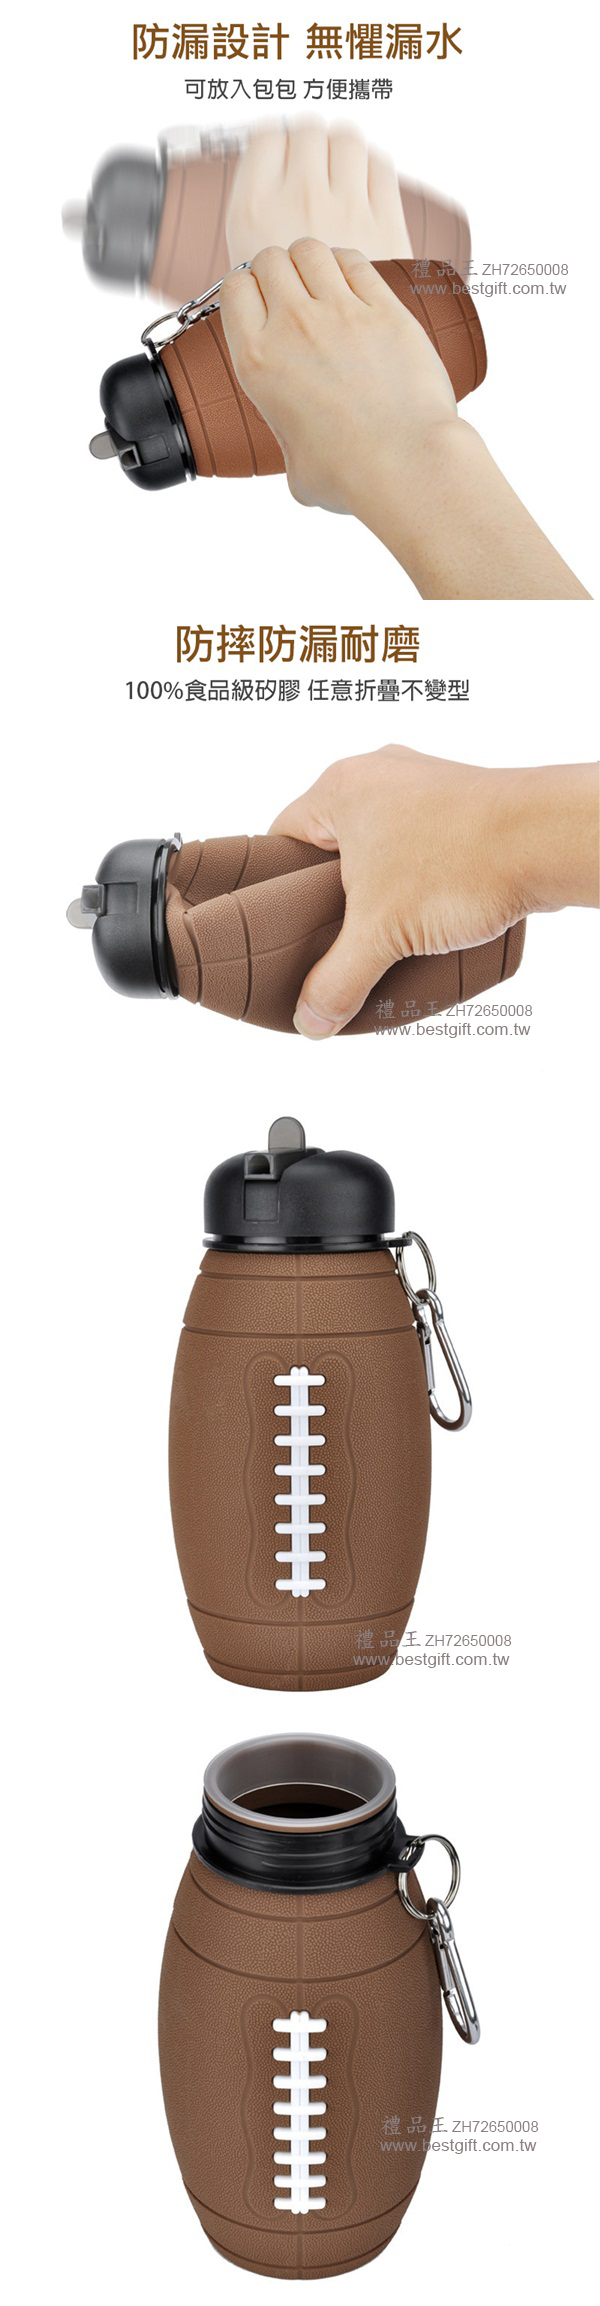 橄欖球造型硅膠伸縮水壺  商品貨號: ZH72650008